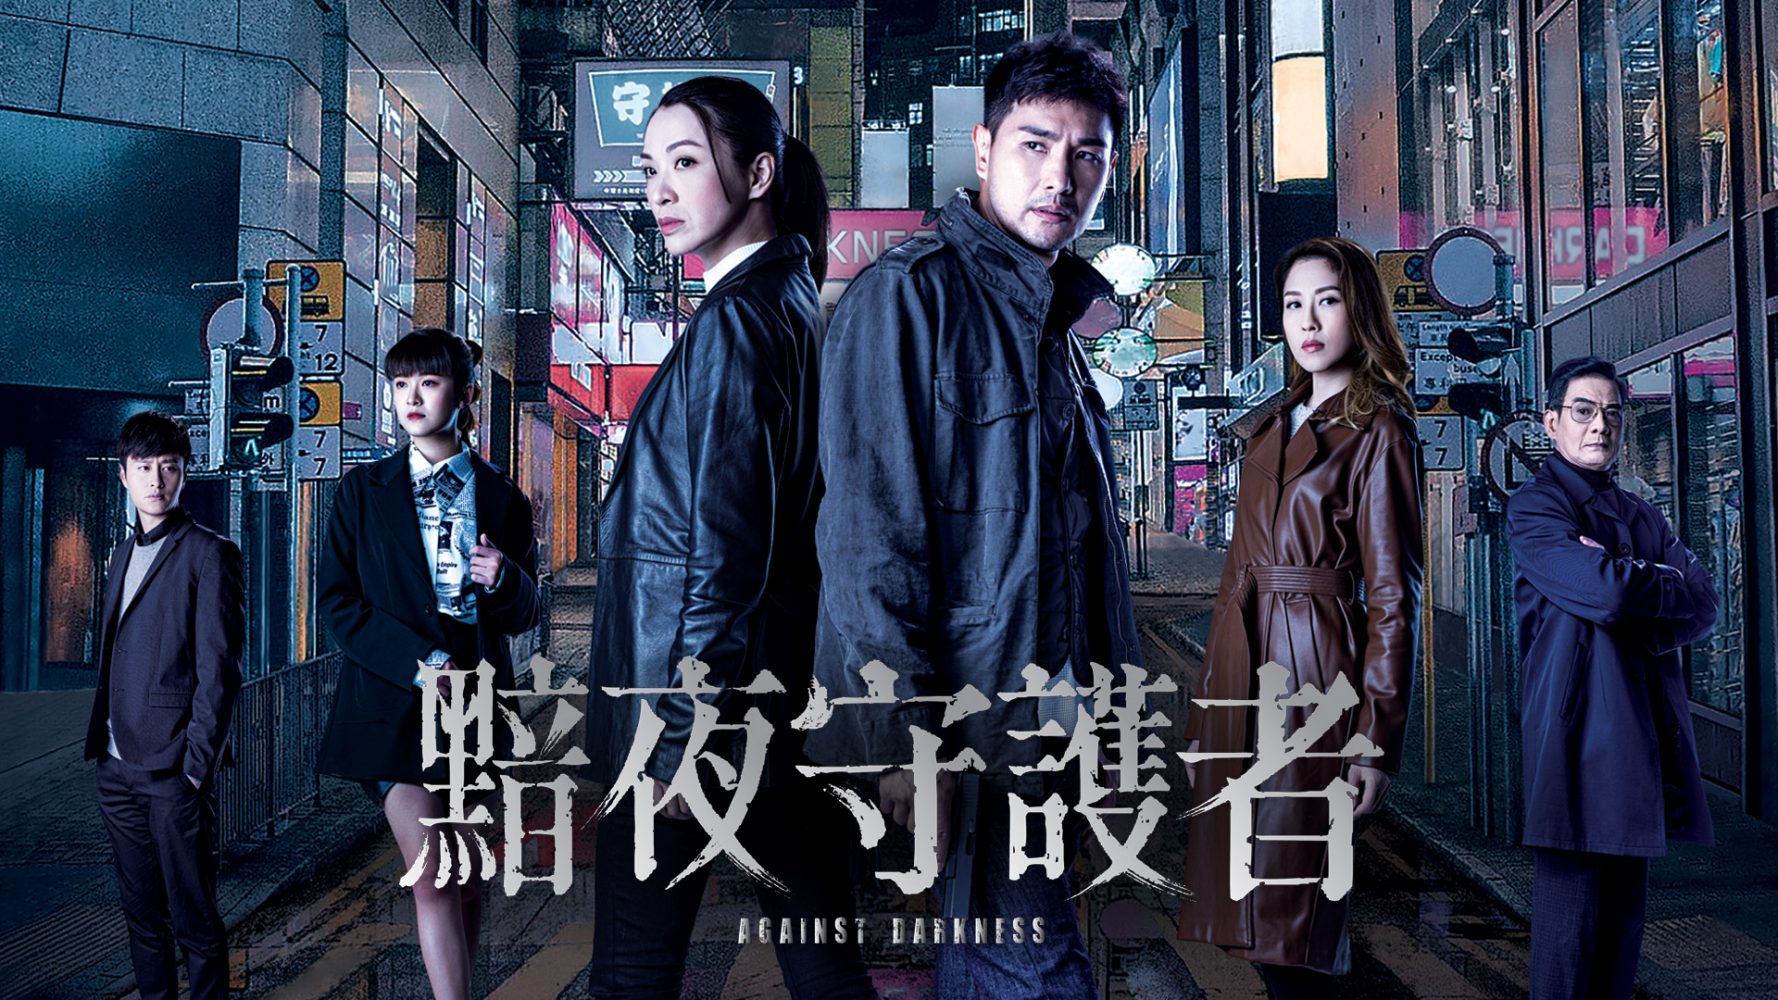 Những bộ phim truyền hình hình sự TVB hoặc và mới mẻ nhất: Hộ vệ âm thầm - Against Darkness (2022)